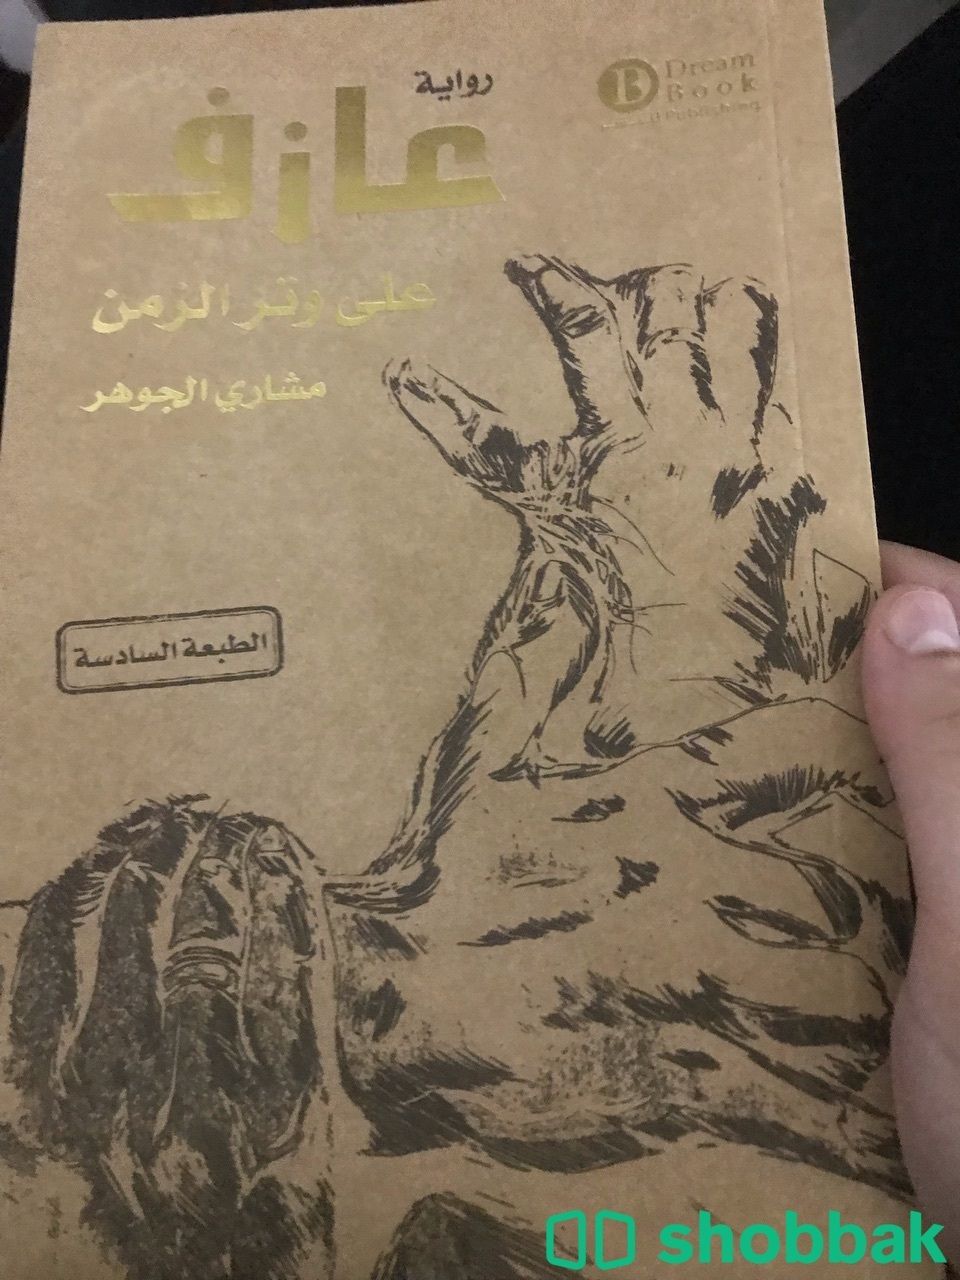 كتب مستعمله للبيع الكتاب الواحد ب 10 Shobbak Saudi Arabia